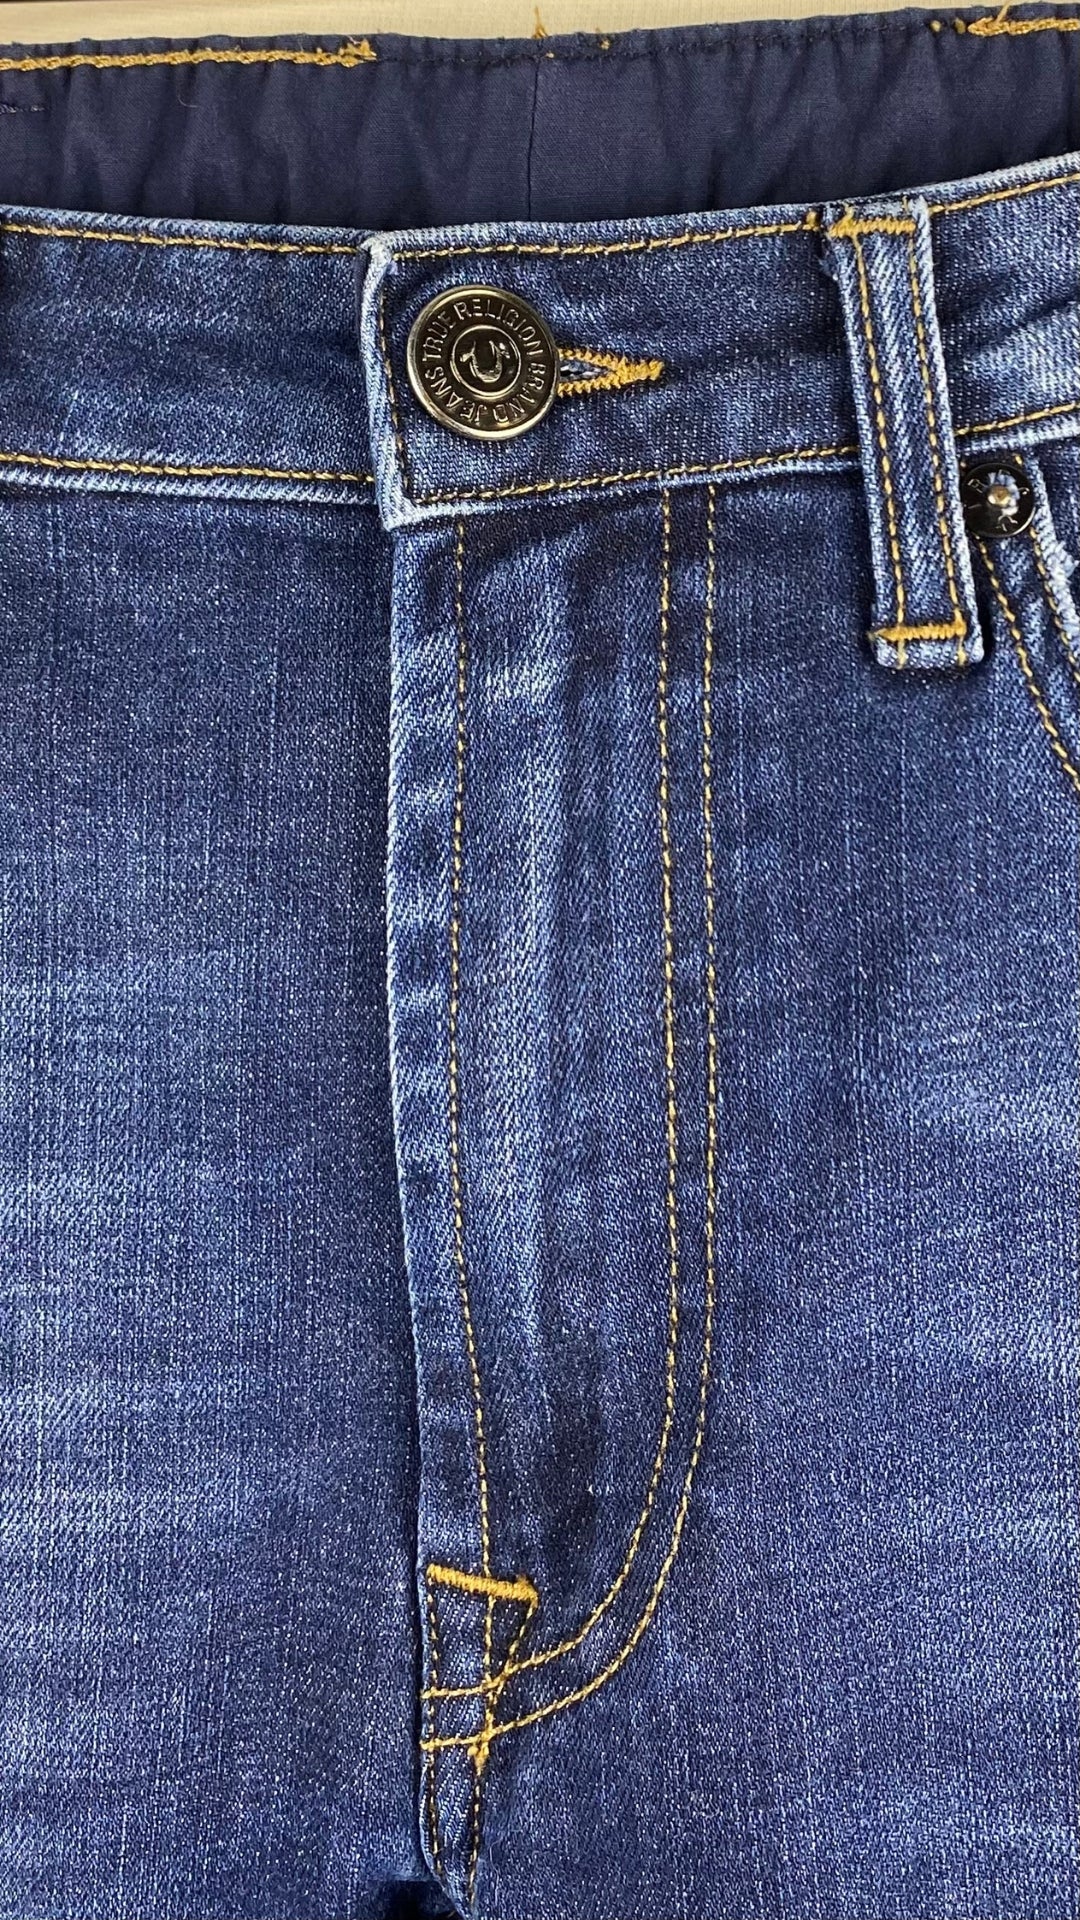 Jeans foncé à jambe étroite, True Religion, taille 27. Vue de la bande de taille.